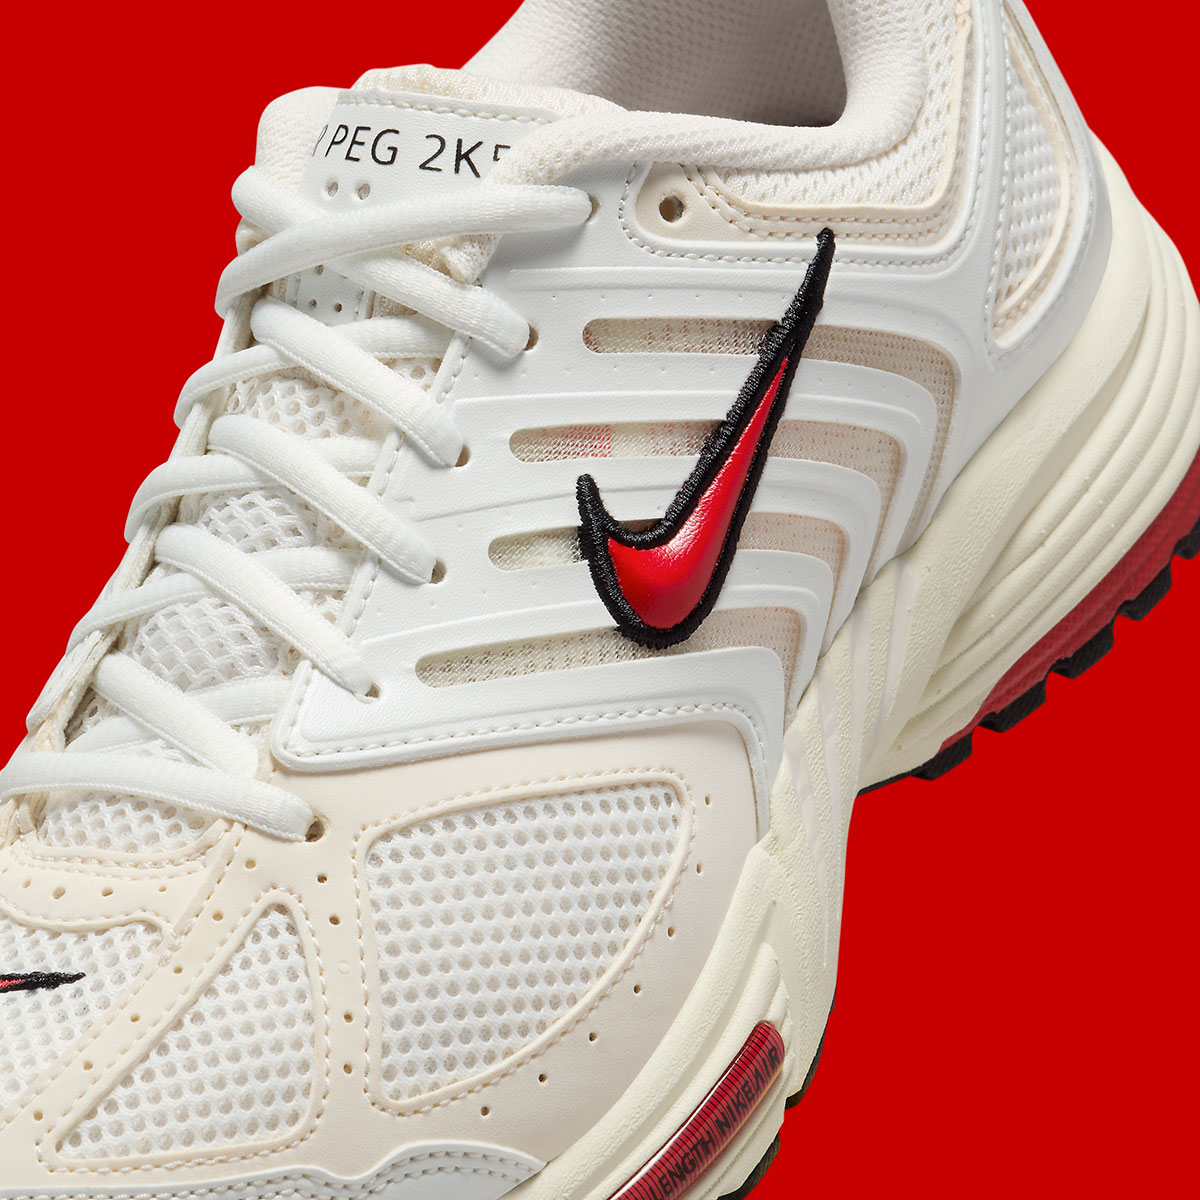 Nike sleeve Zoom Pegasus 2k5 White Gym Red Phantom Fn7153 101 7